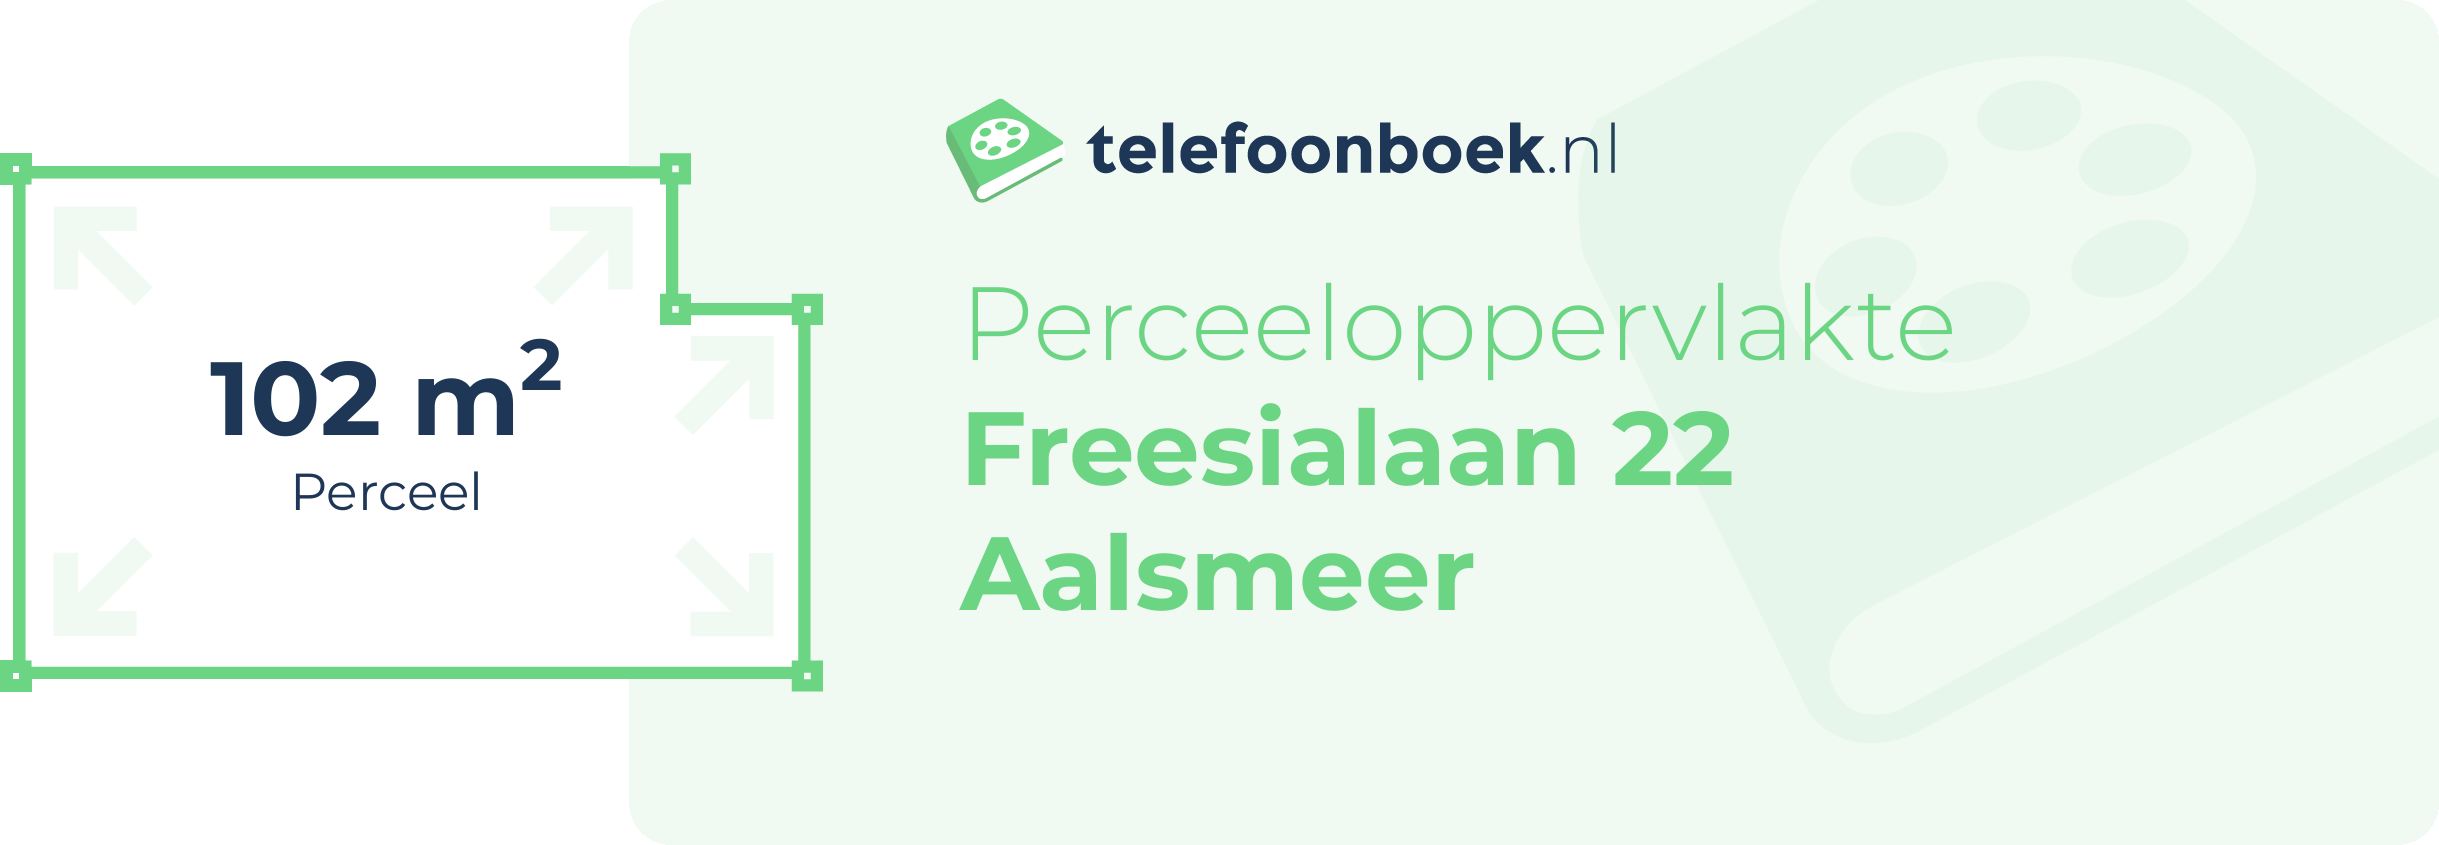 Perceeloppervlakte Freesialaan 22 Aalsmeer